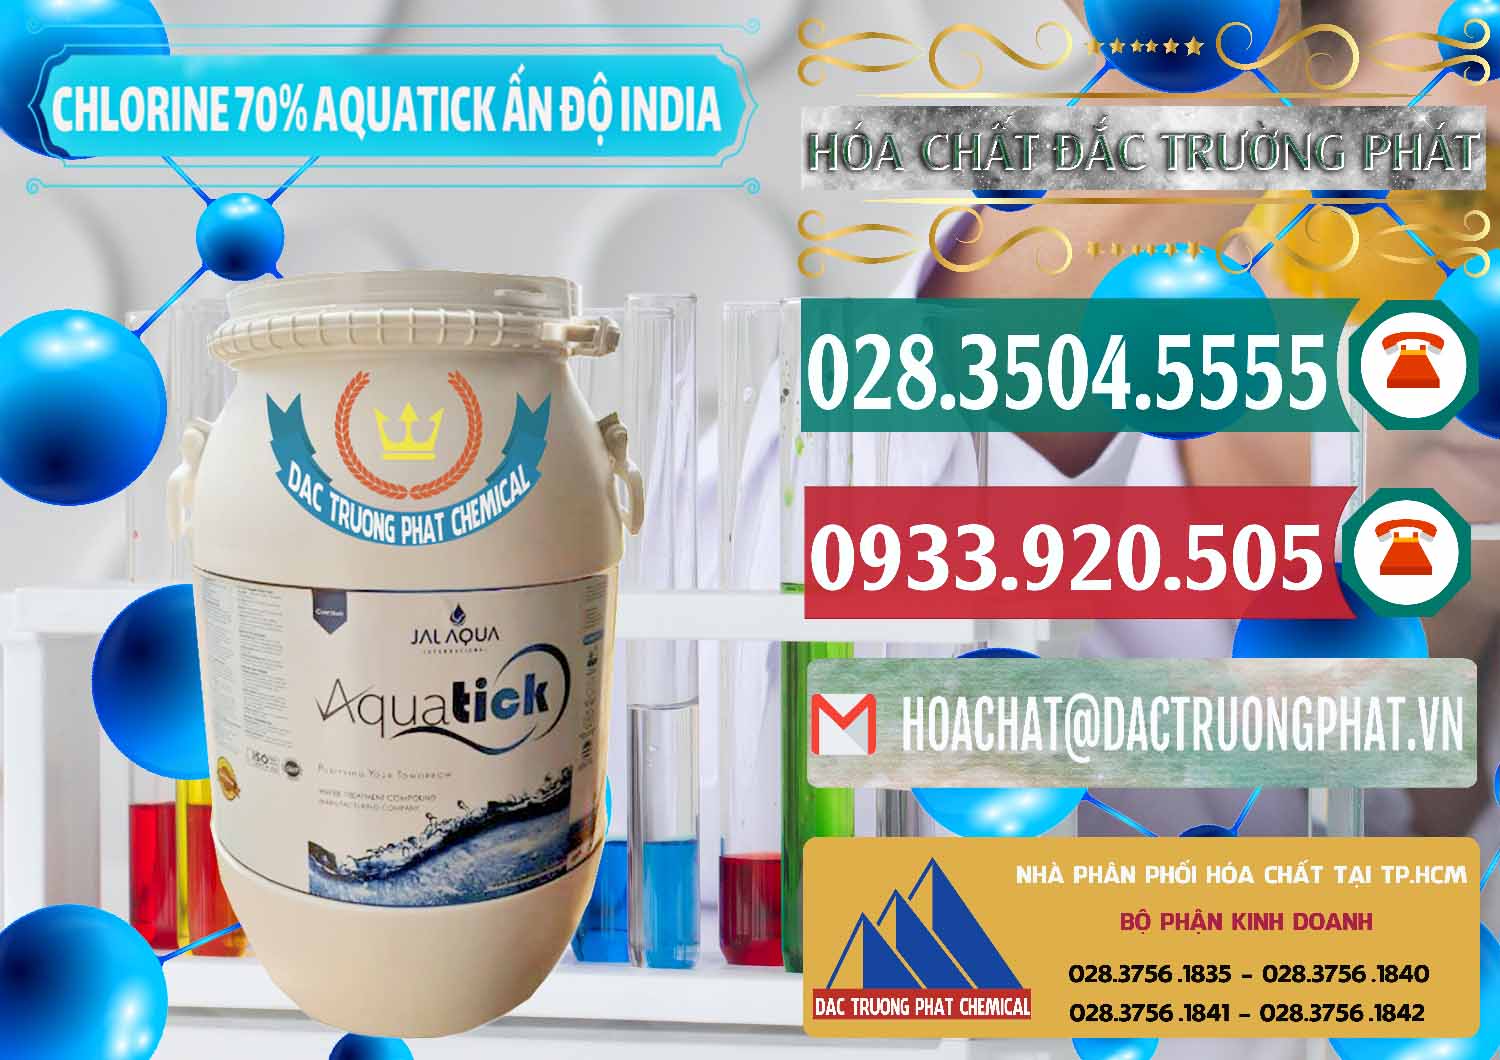 Cty bán - cung cấp Chlorine – Clorin 70% Aquatick Jal Aqua Ấn Độ India - 0215 - Cung cấp và kinh doanh hóa chất tại TP.HCM - muabanhoachat.vn